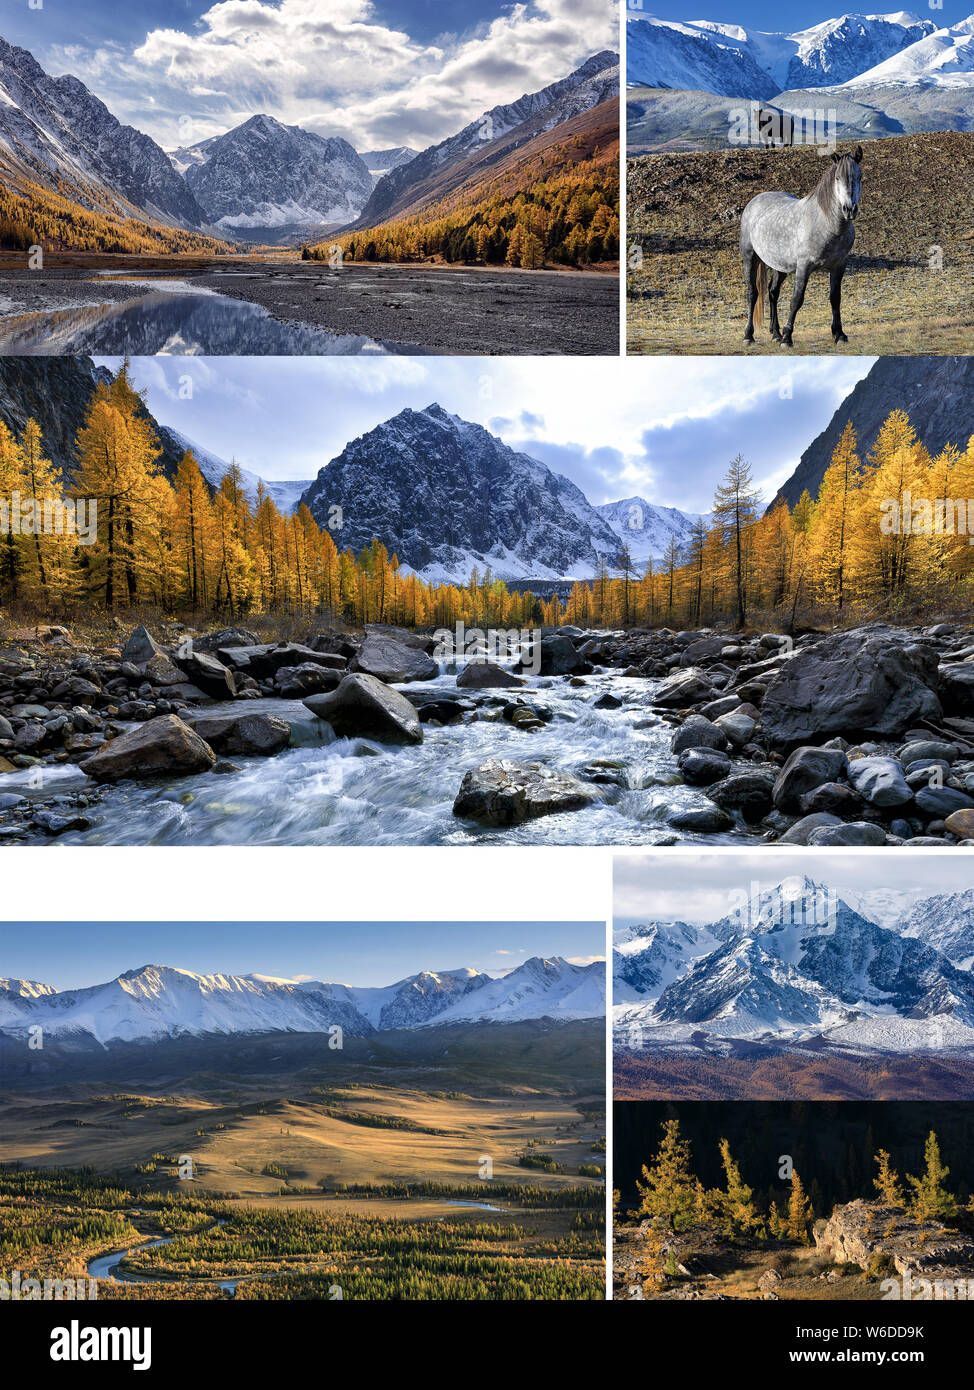 Collage de fotos con espacio para el texto. Paisaje otoñal con Aktru river y pico Karatash, Chuya river, Kurai estepas y montañas, caballos salvajes y Foto de stock